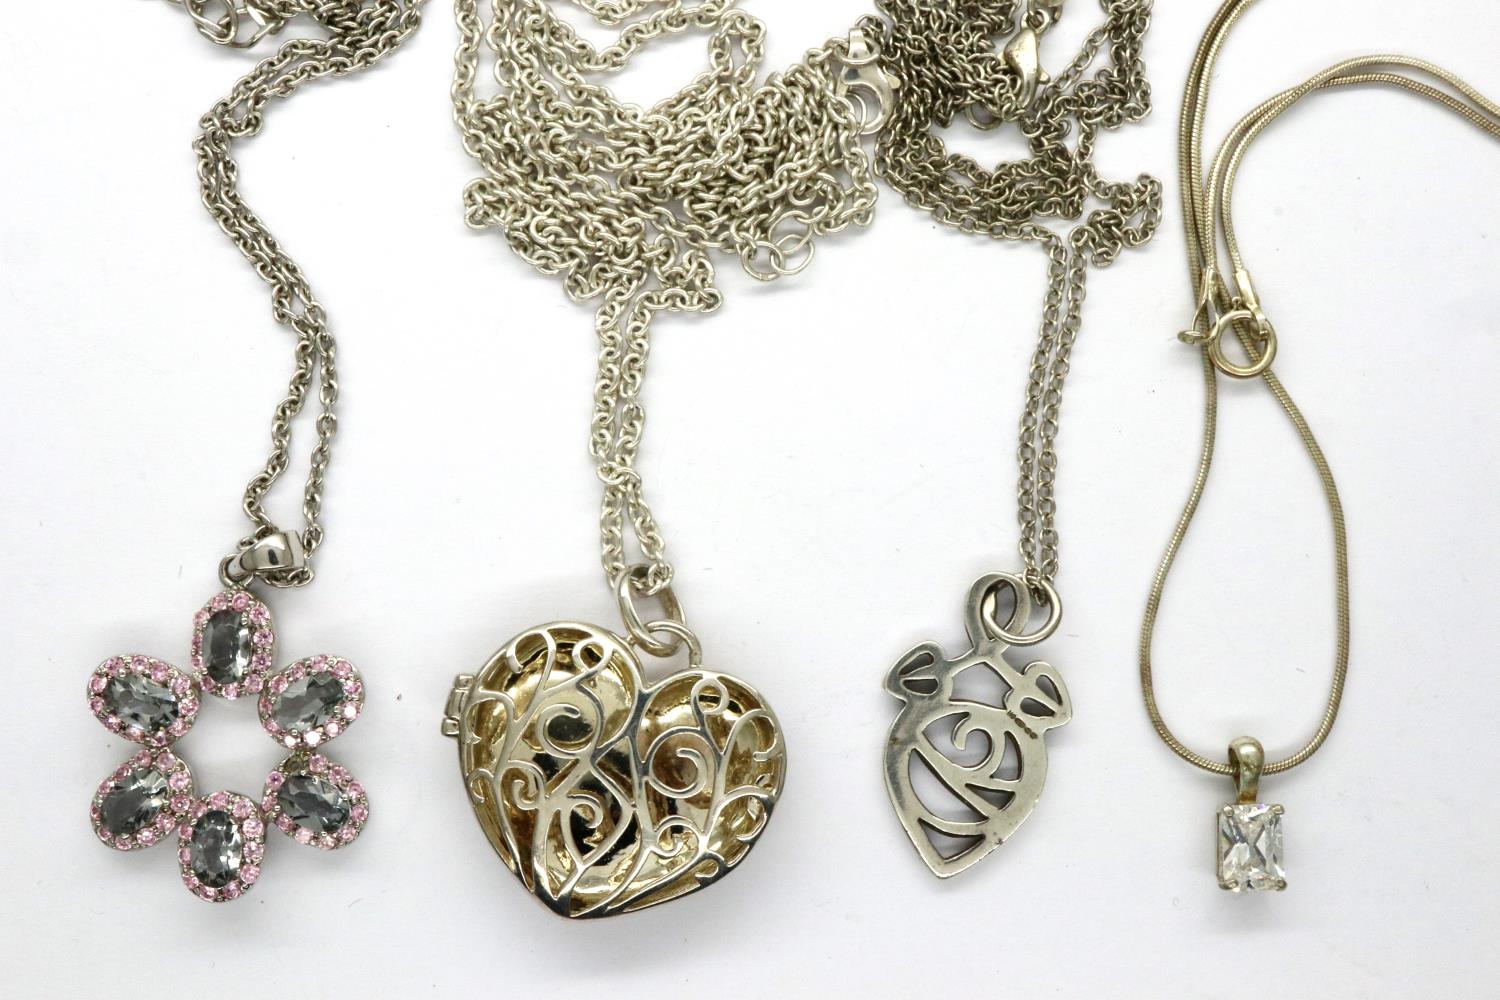 Four 925 silver pendant necklaces including a locket, largest chain L: 64 cm. P&P Group 1 (£14+VAT